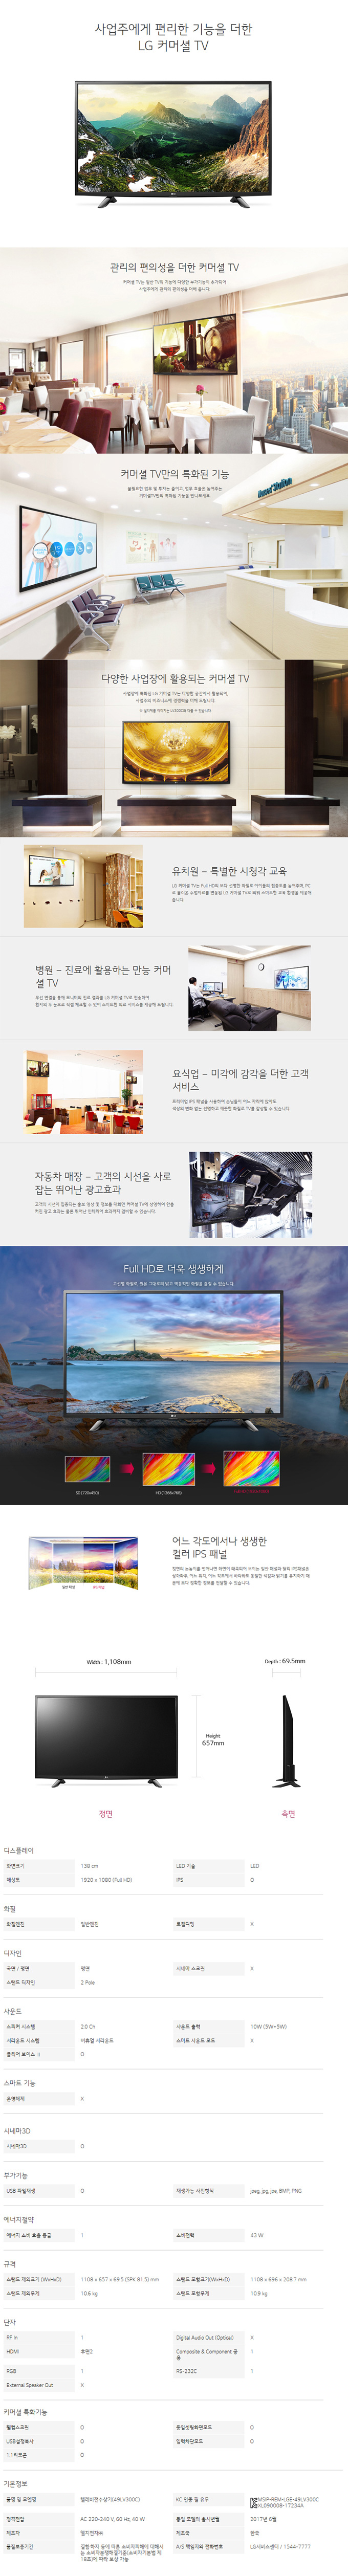 금천케이블 - LG 49인치 LED TV (49LV300C) 상세보기